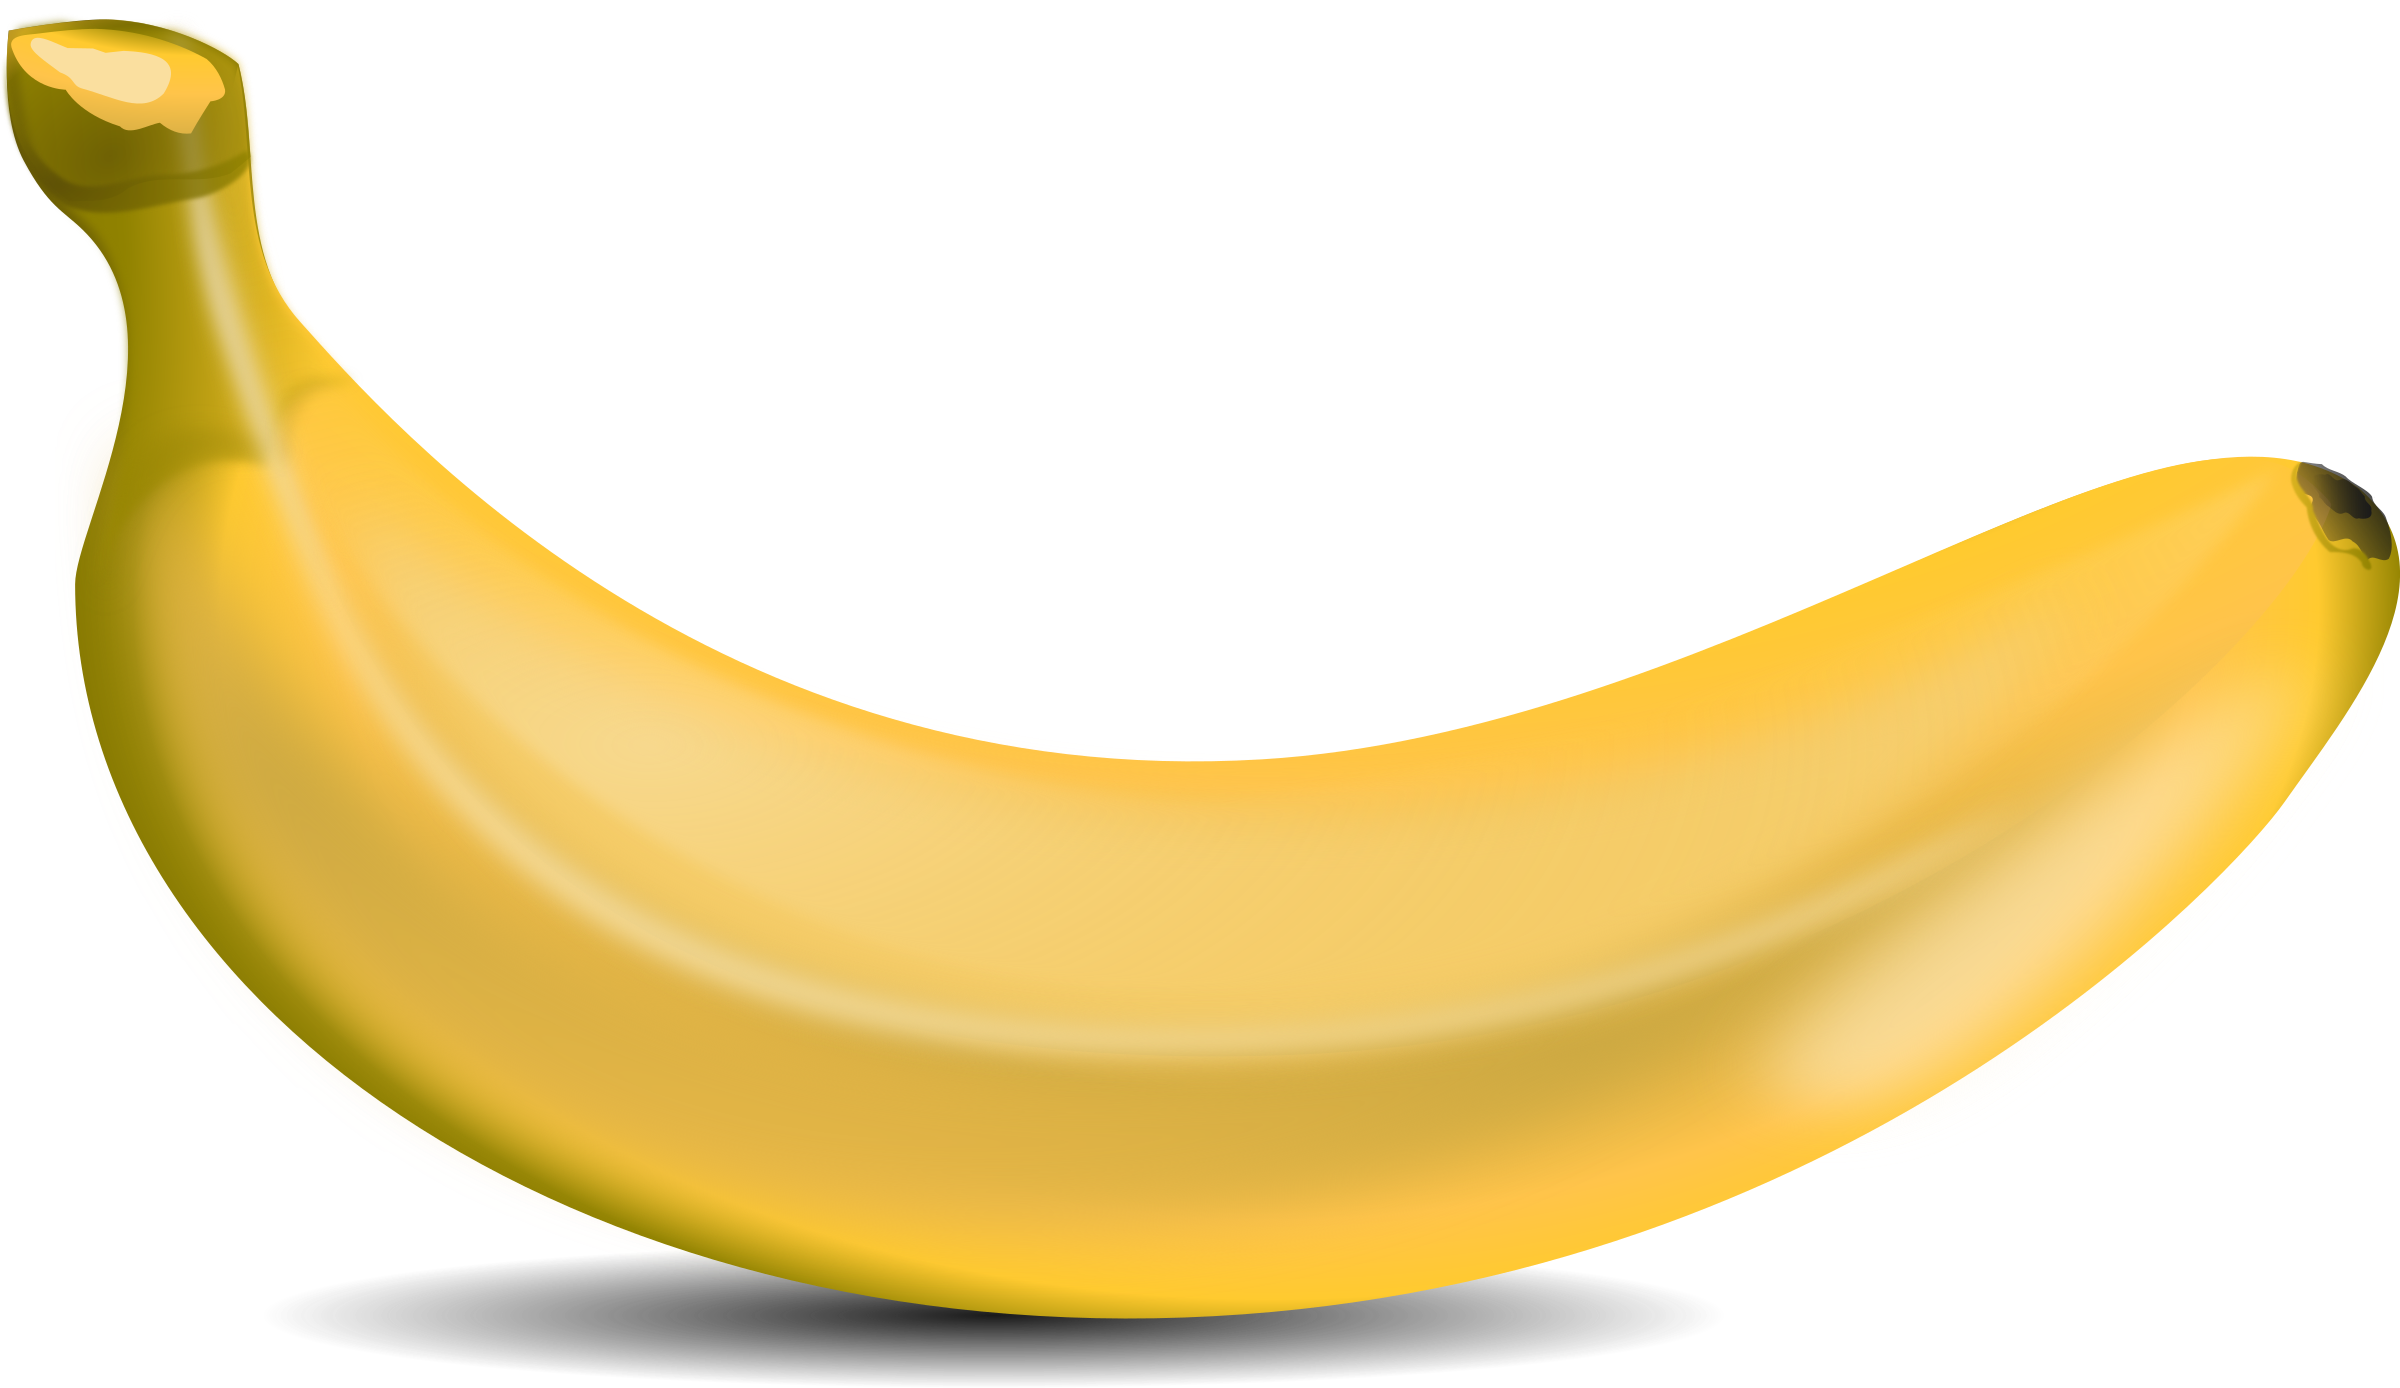 Banana Clip art - Banana Clip Art Free PNG png download - 2400*1388 ...